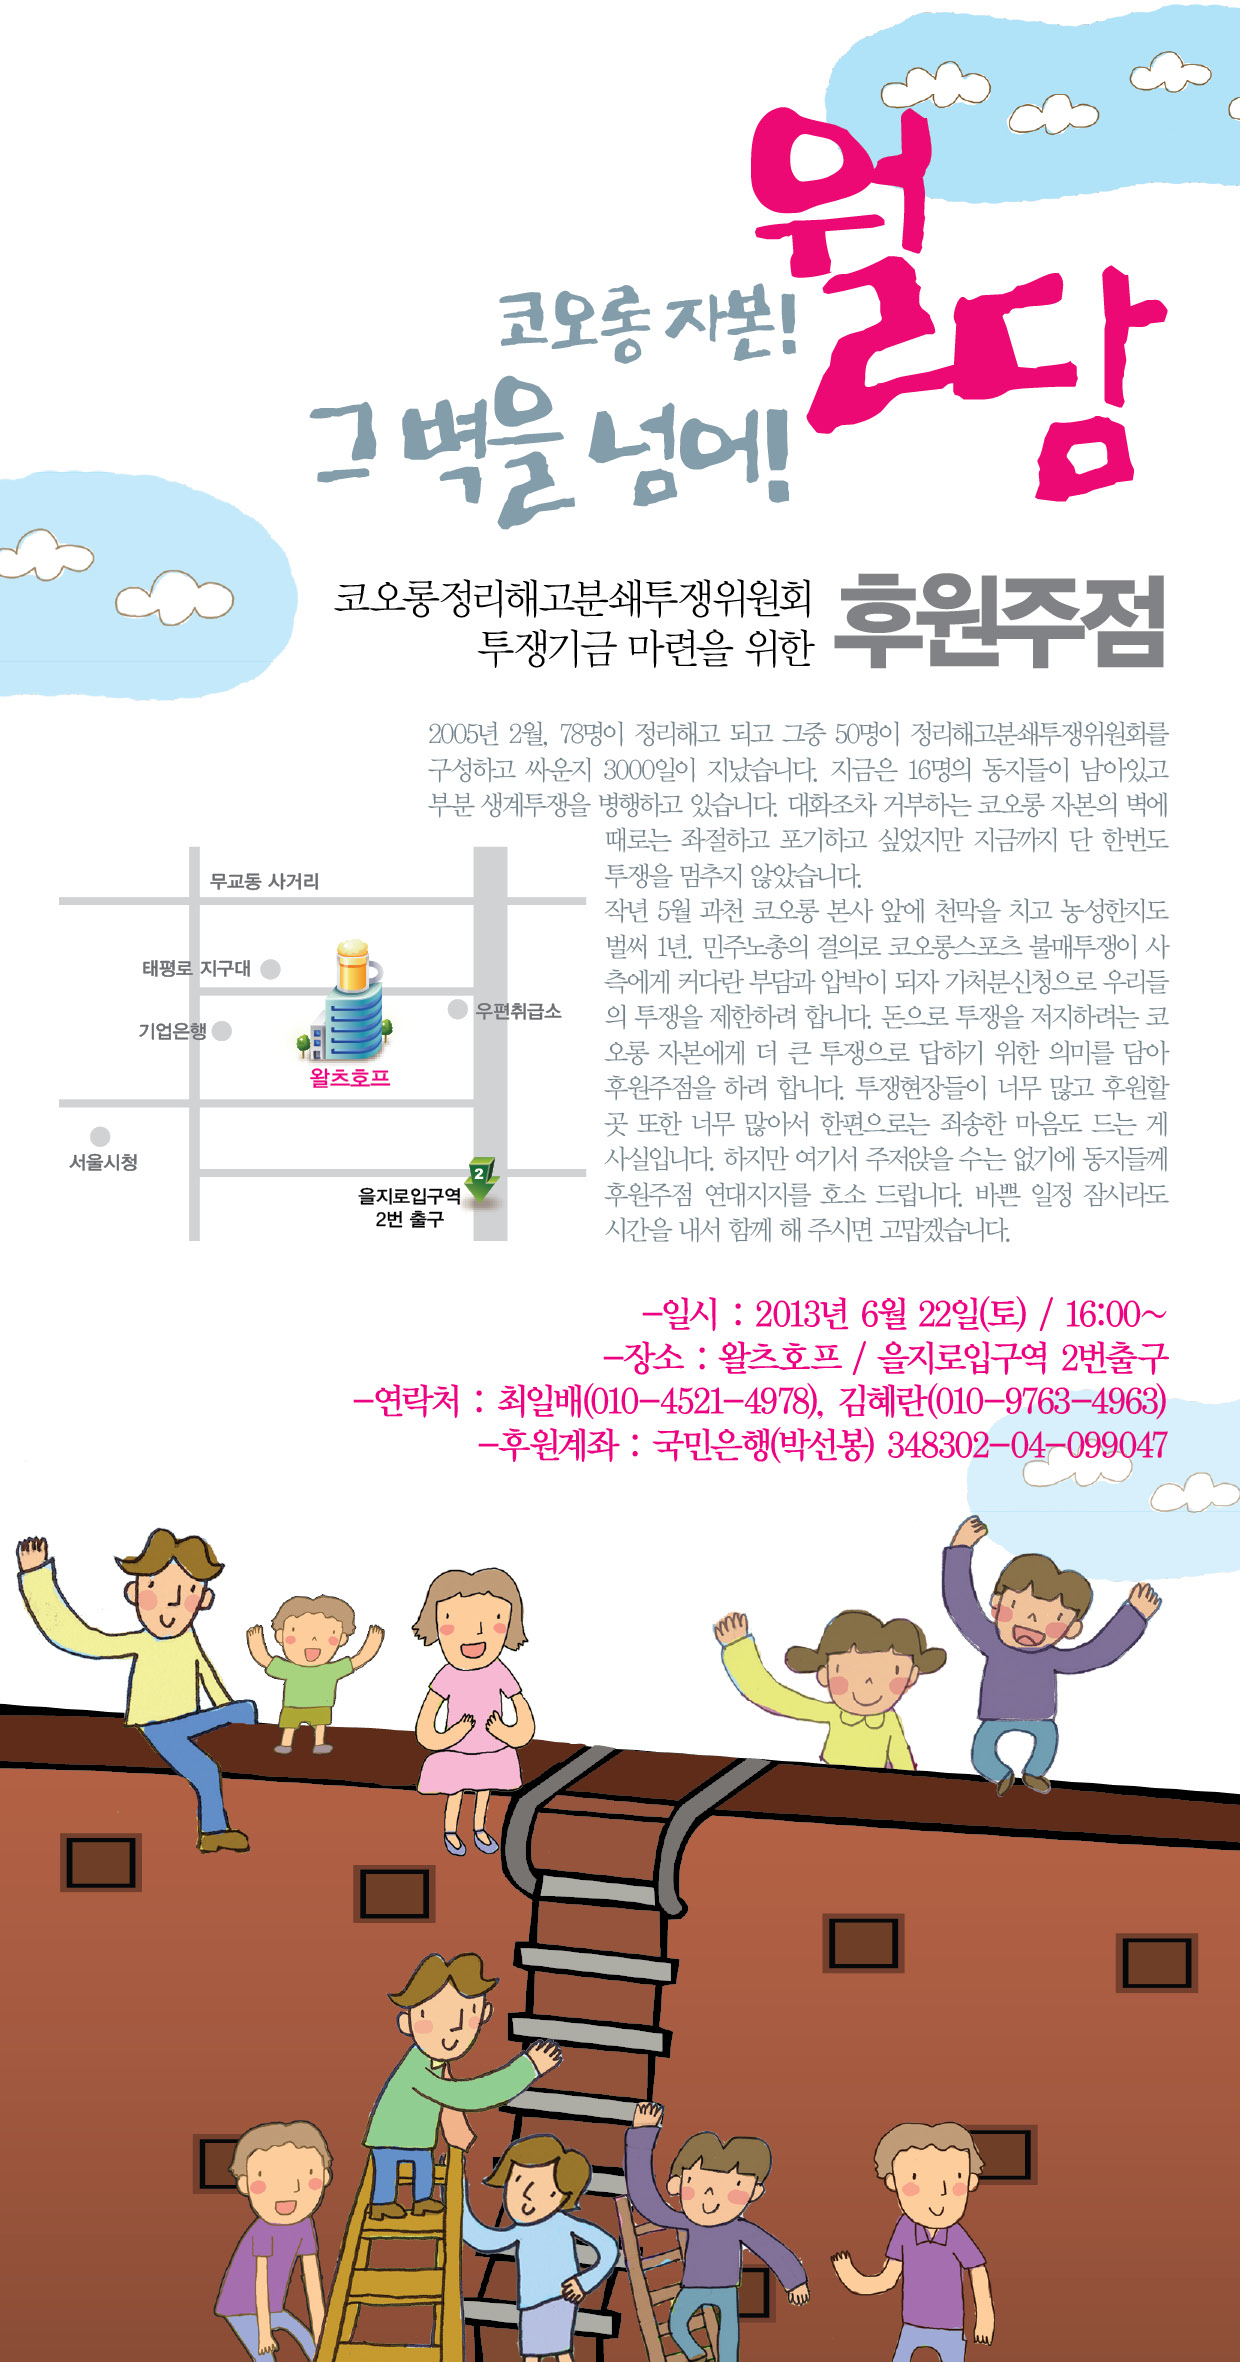 2013-0521 코오롱웹자보-2차수정.jpg